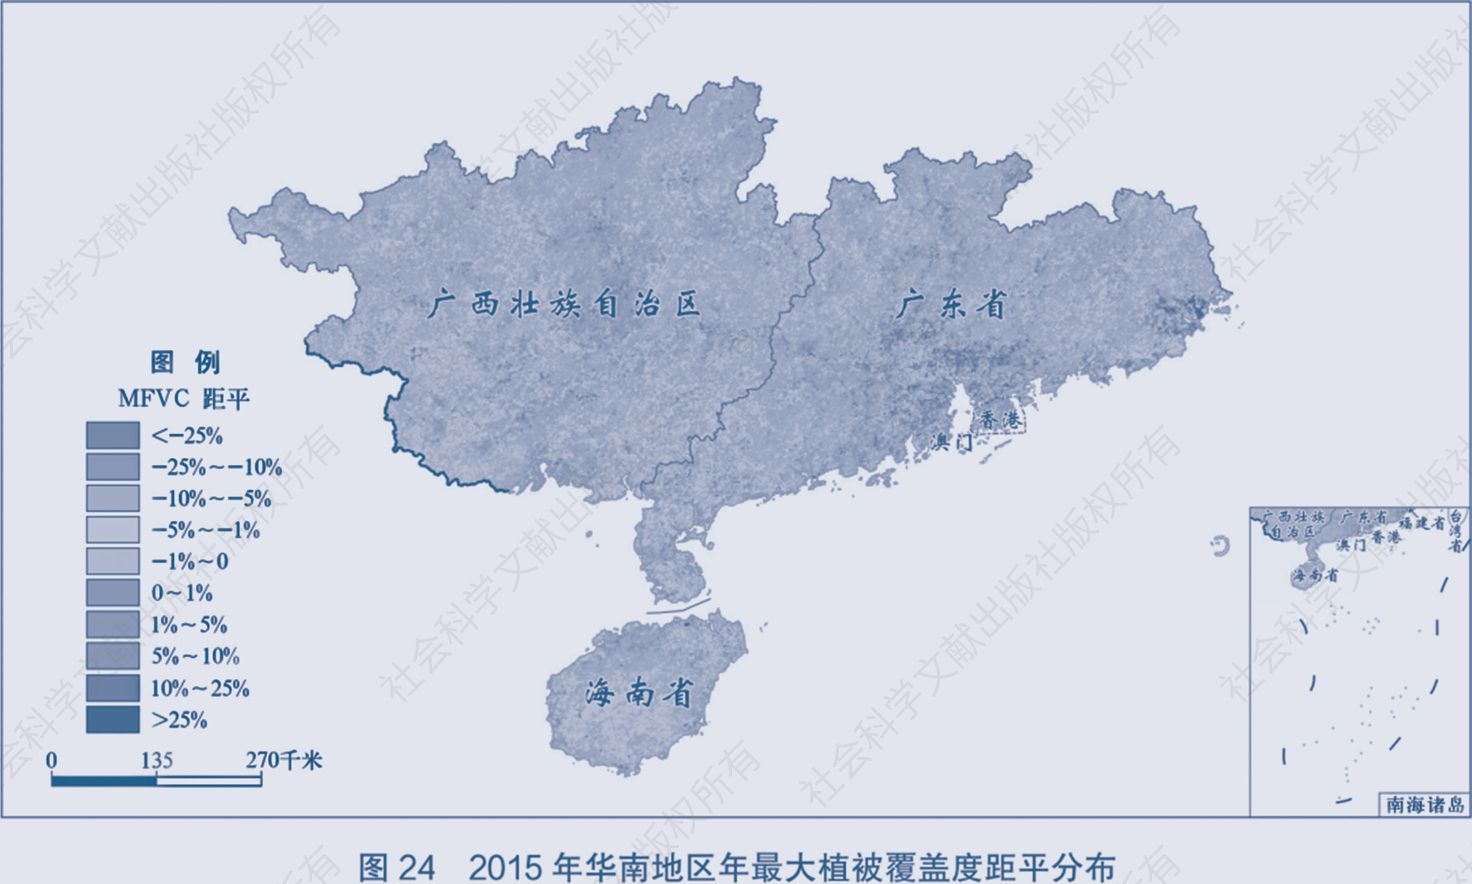 图21.3 含有海南省的中国部分版图示例